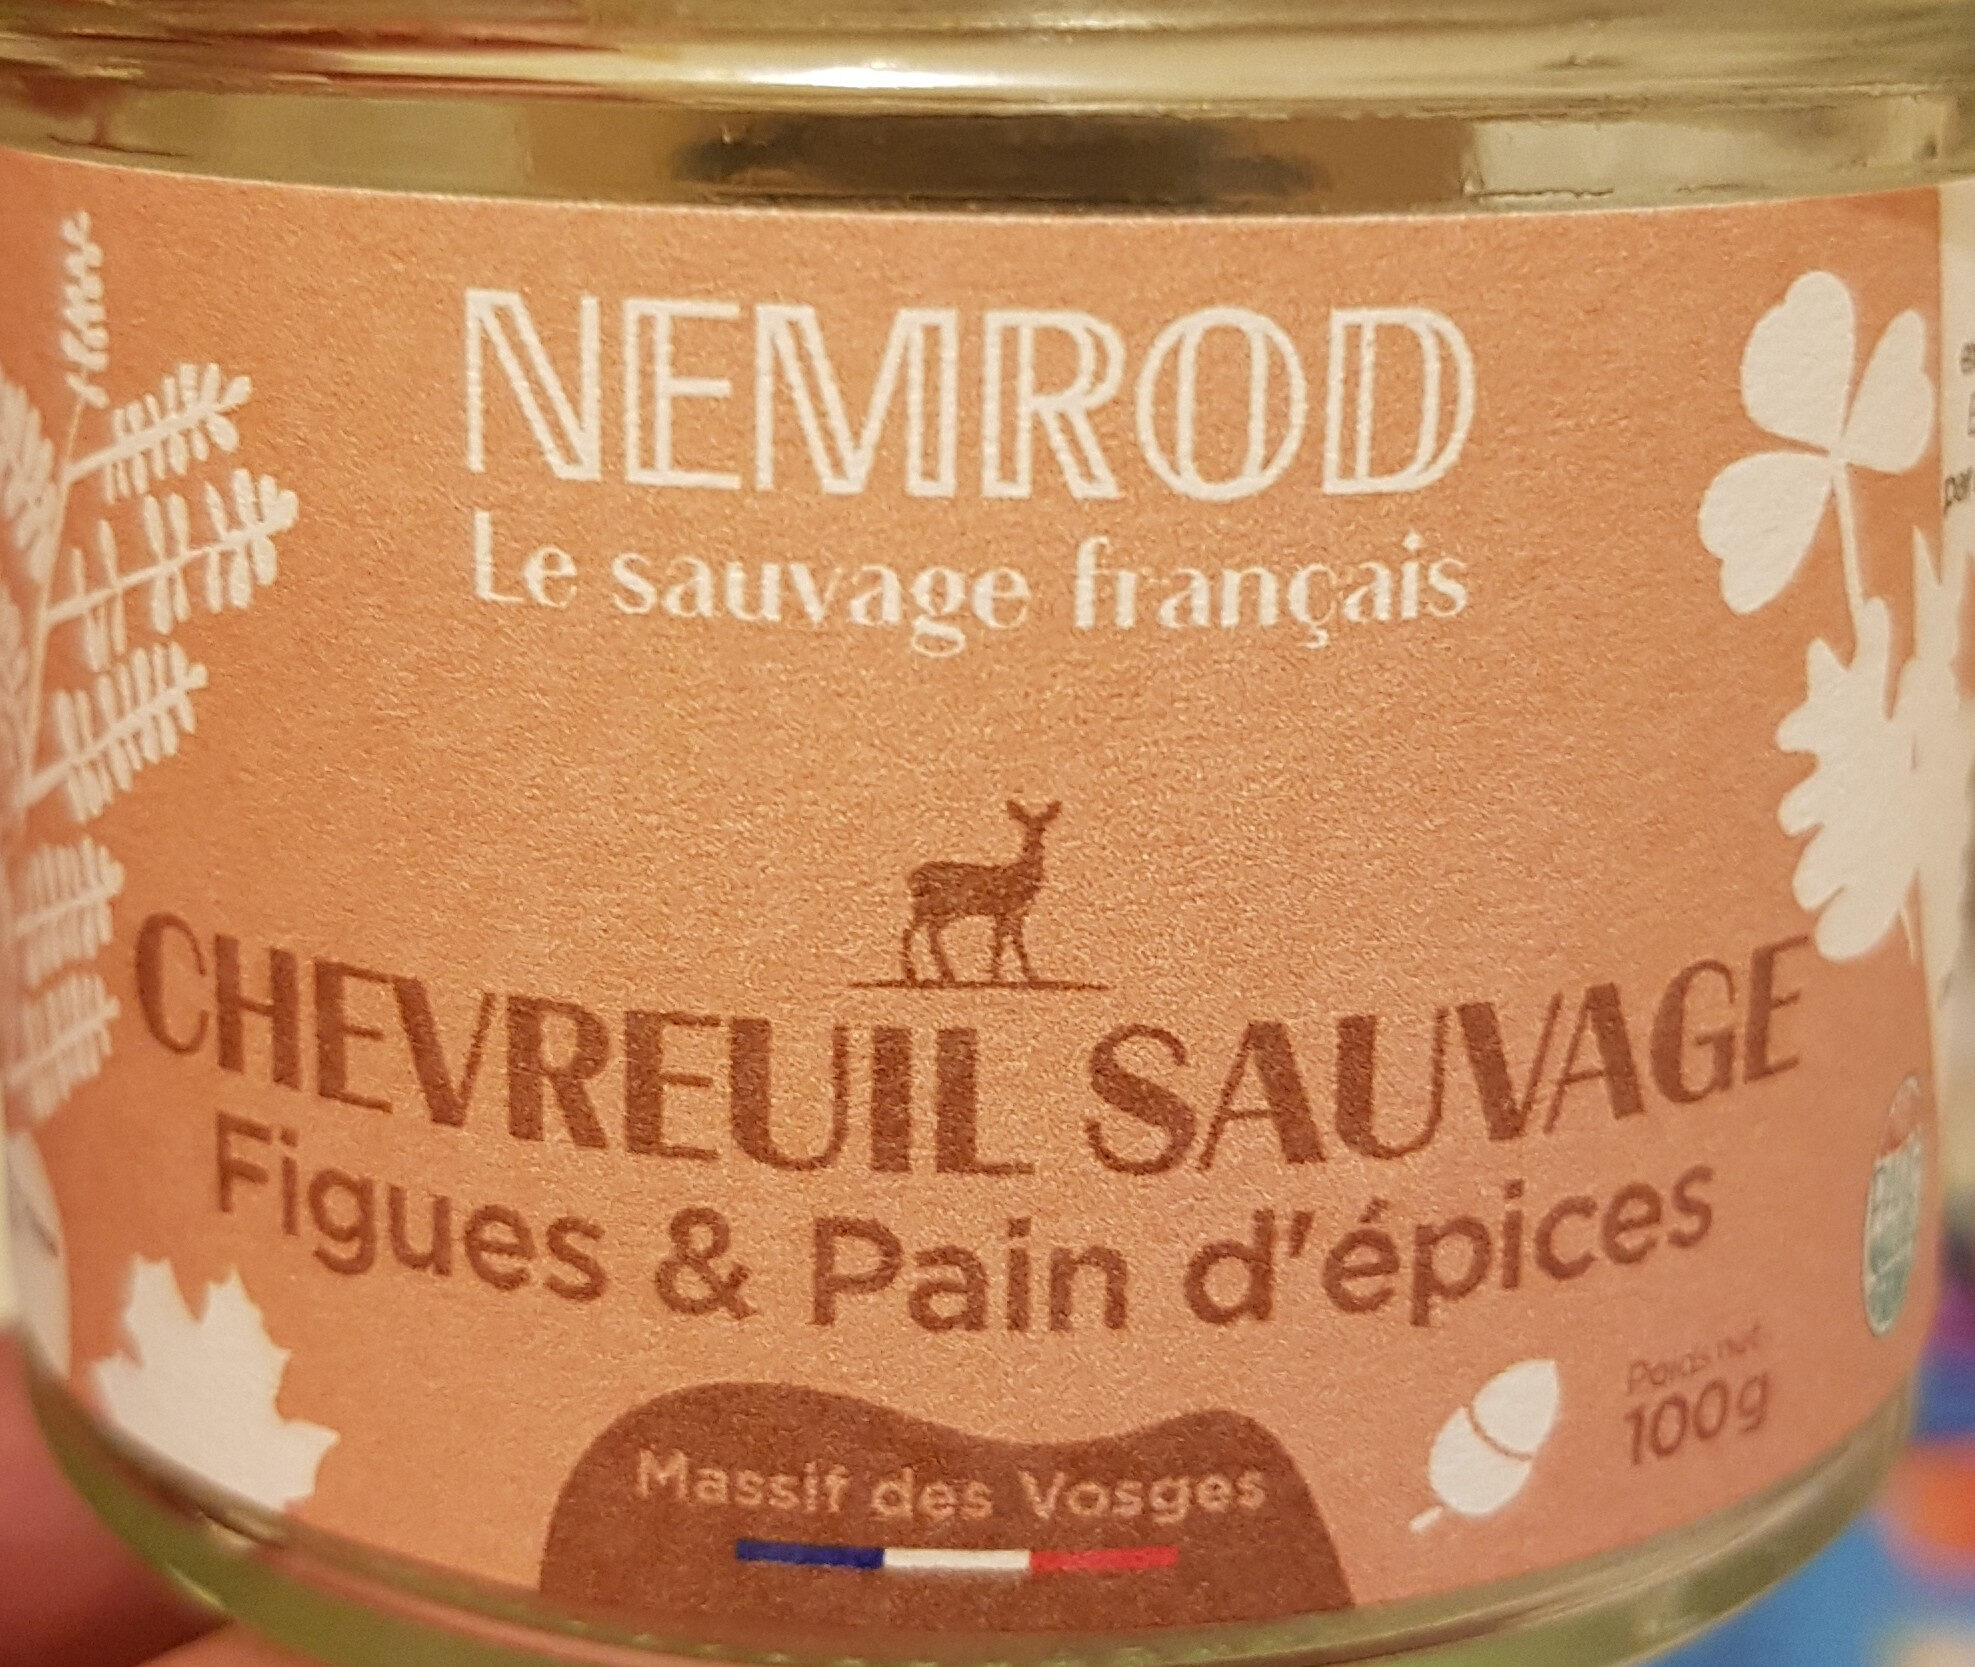 Chevreuil Sauvage Figues et Pain d'épices - Product - fr